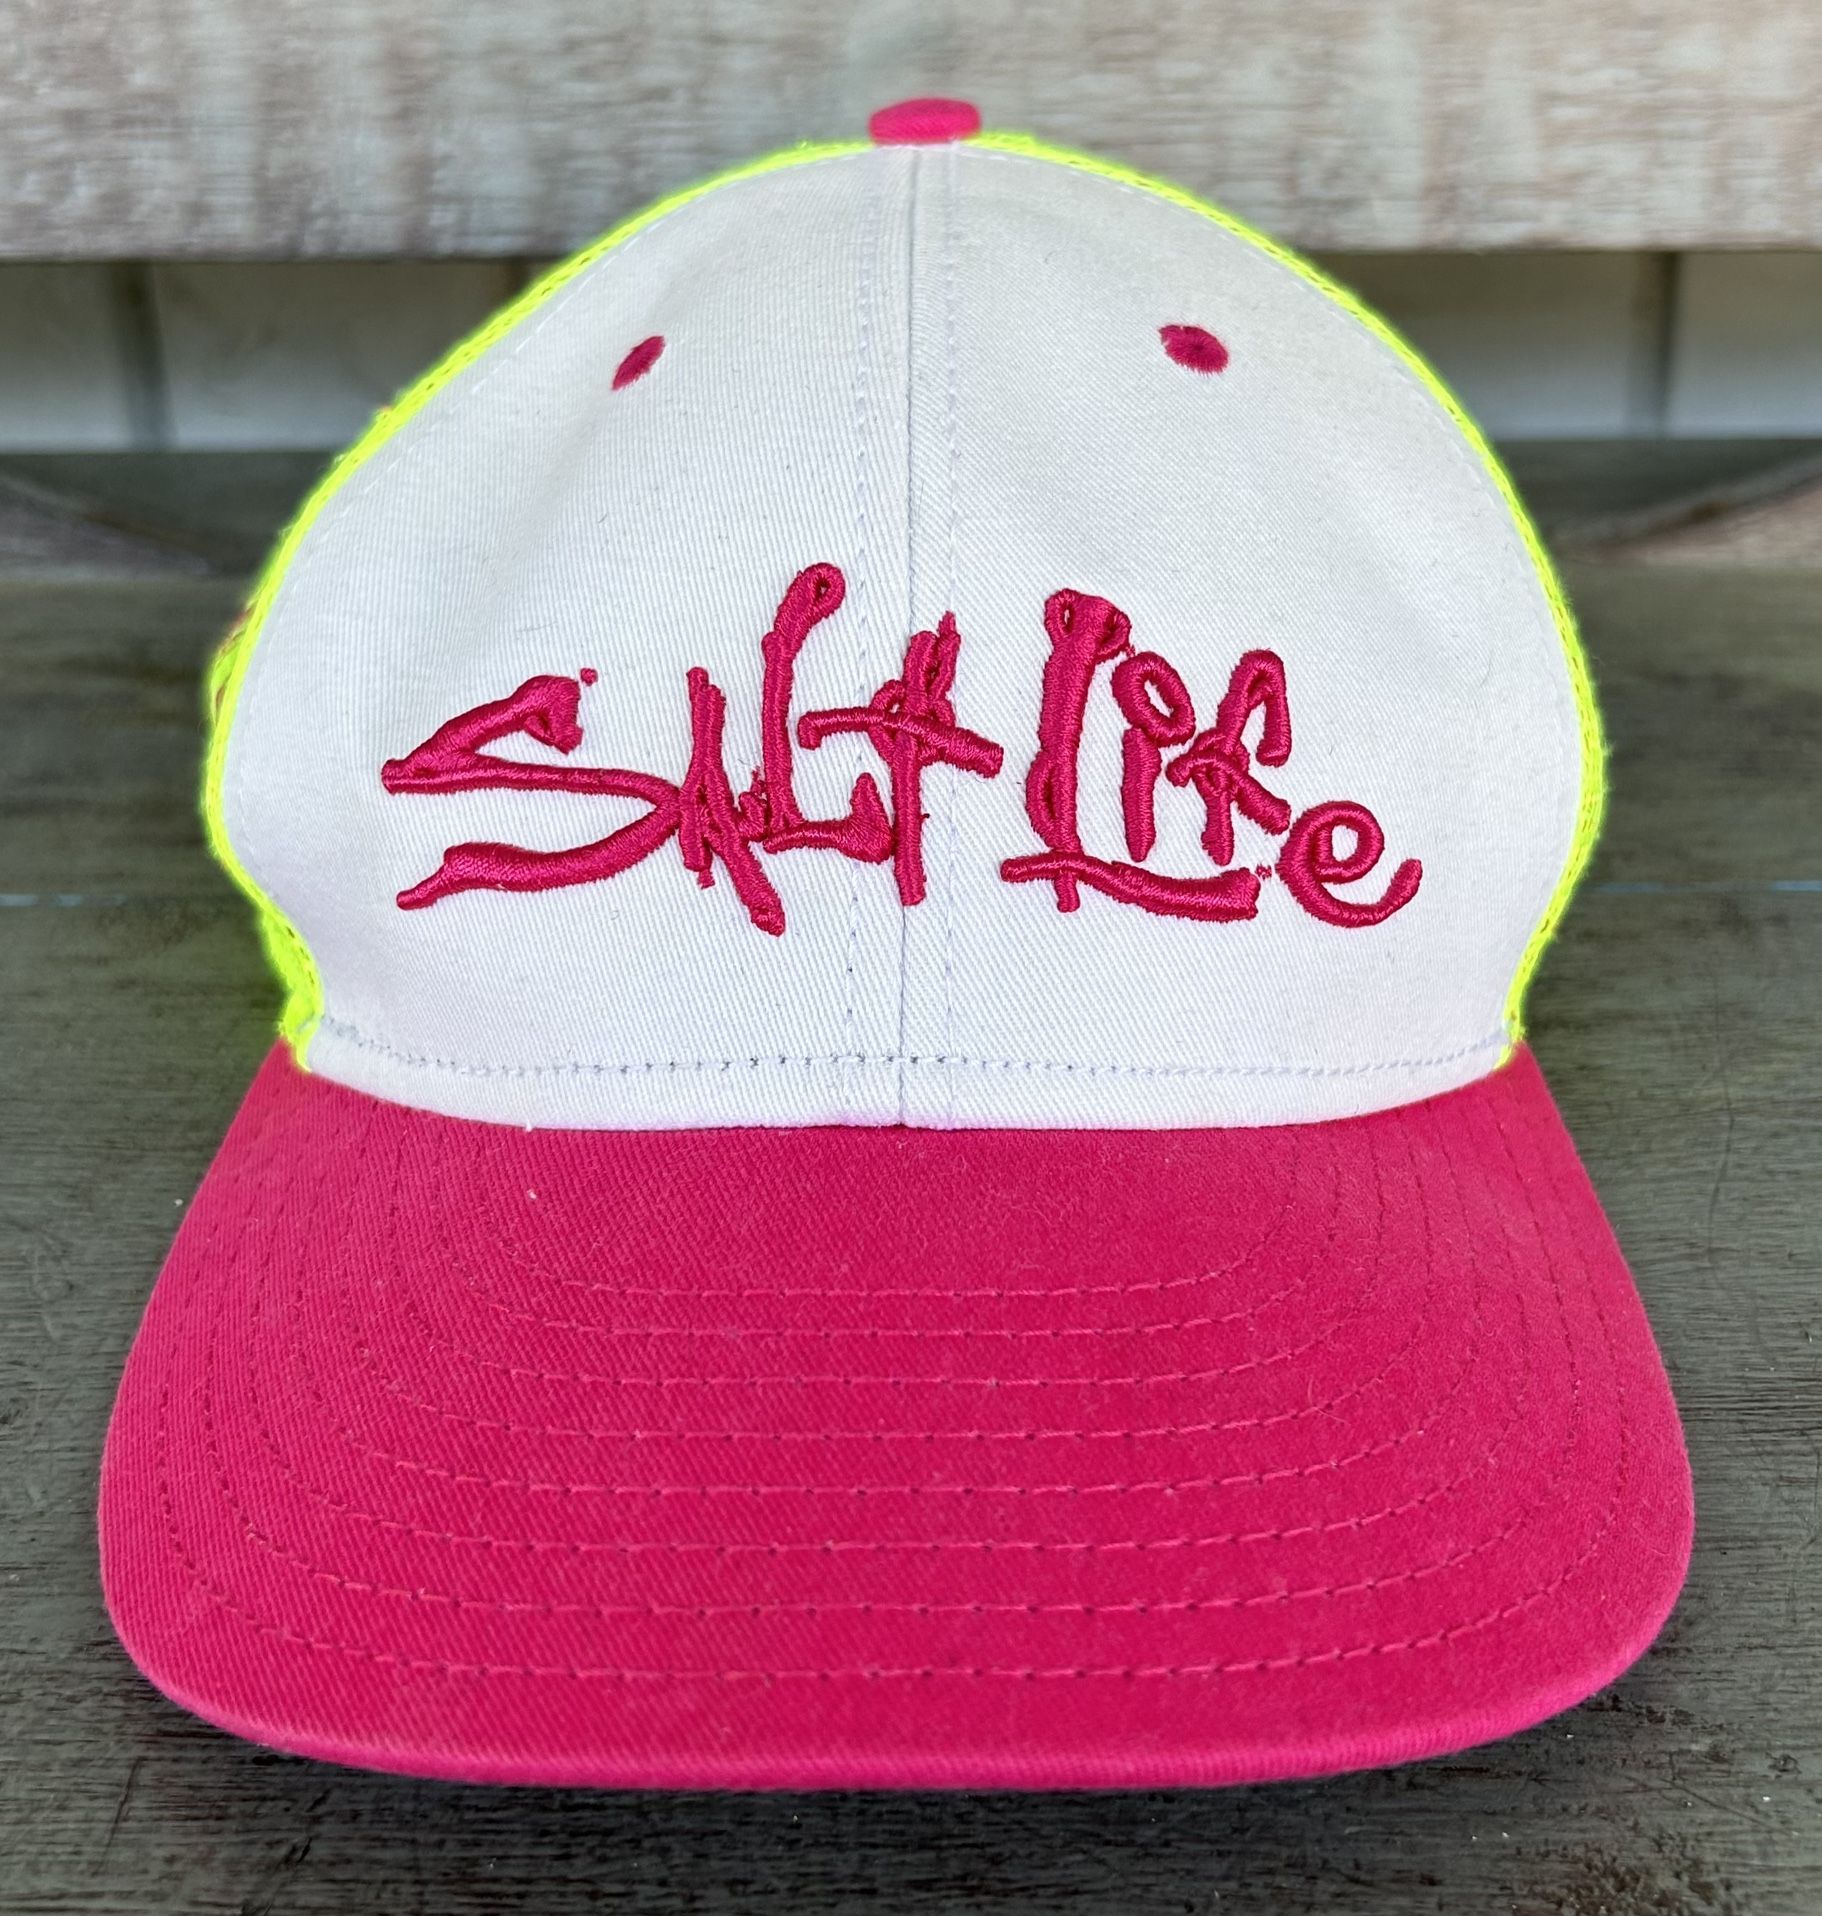 Salt Life Women’s Hat Pink Yellow Cap SnapBack Adjustable 